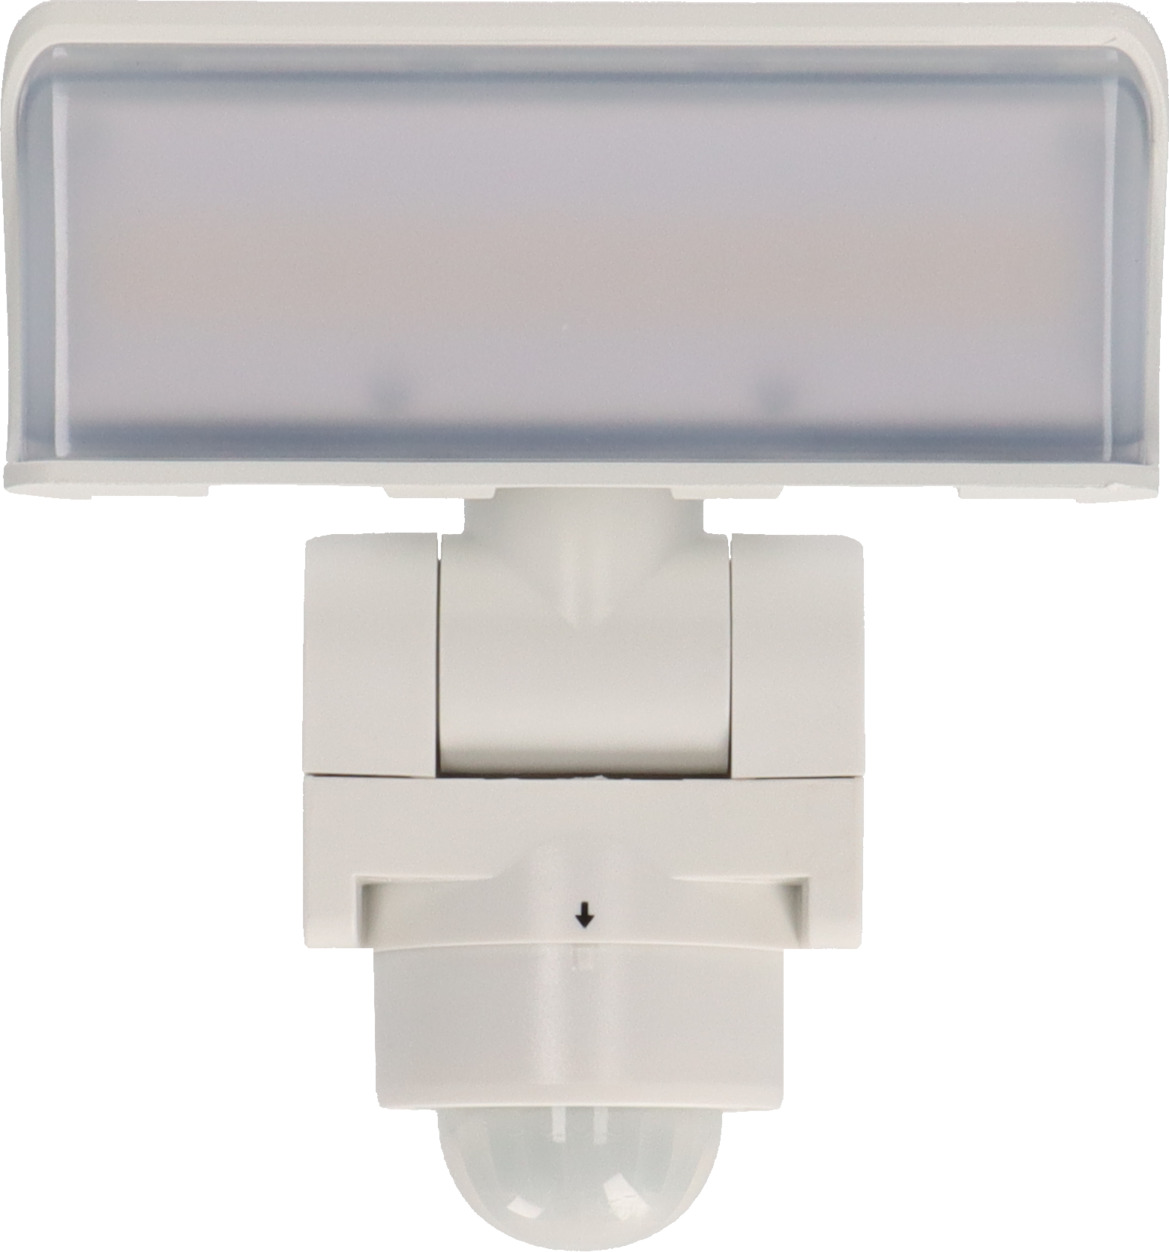 2X 80W SMD Foco LED con Sensor Movimiento,Proyector LED Exterior,Blanco  Calido con Detector PIR de IP65(resistente al agua),Iluminación de Exterior  y